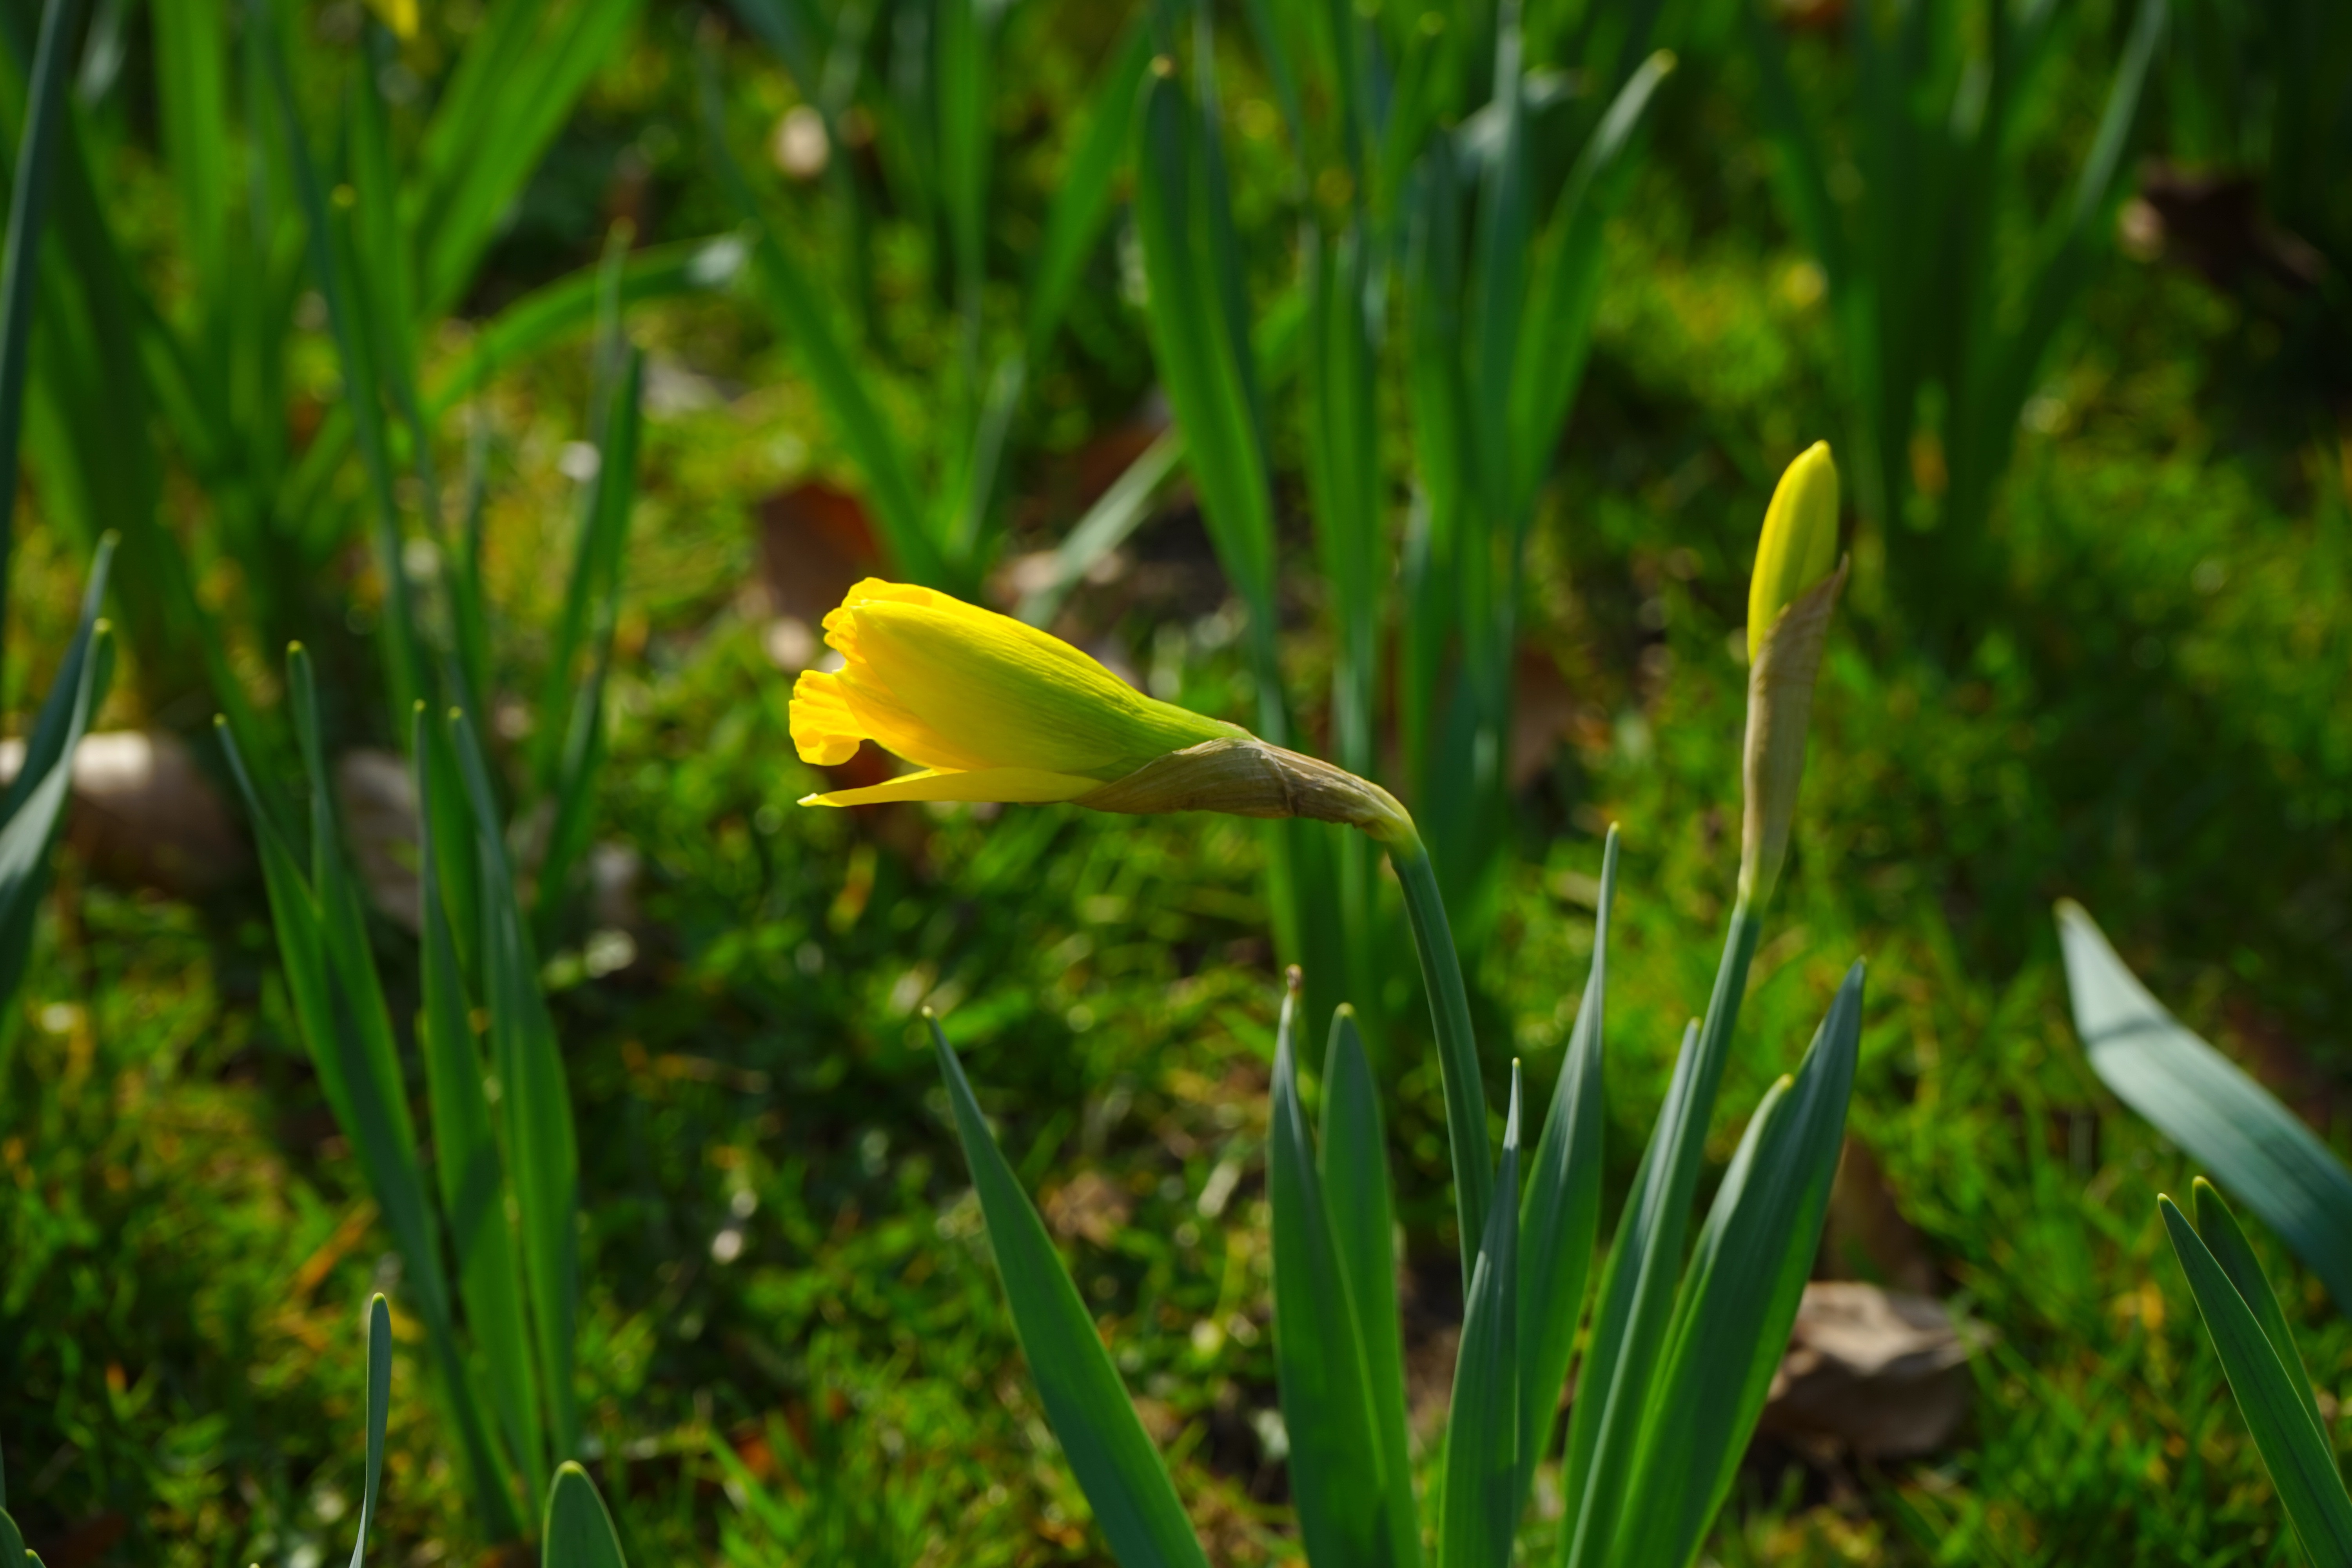 yellow petaled flower near green grass